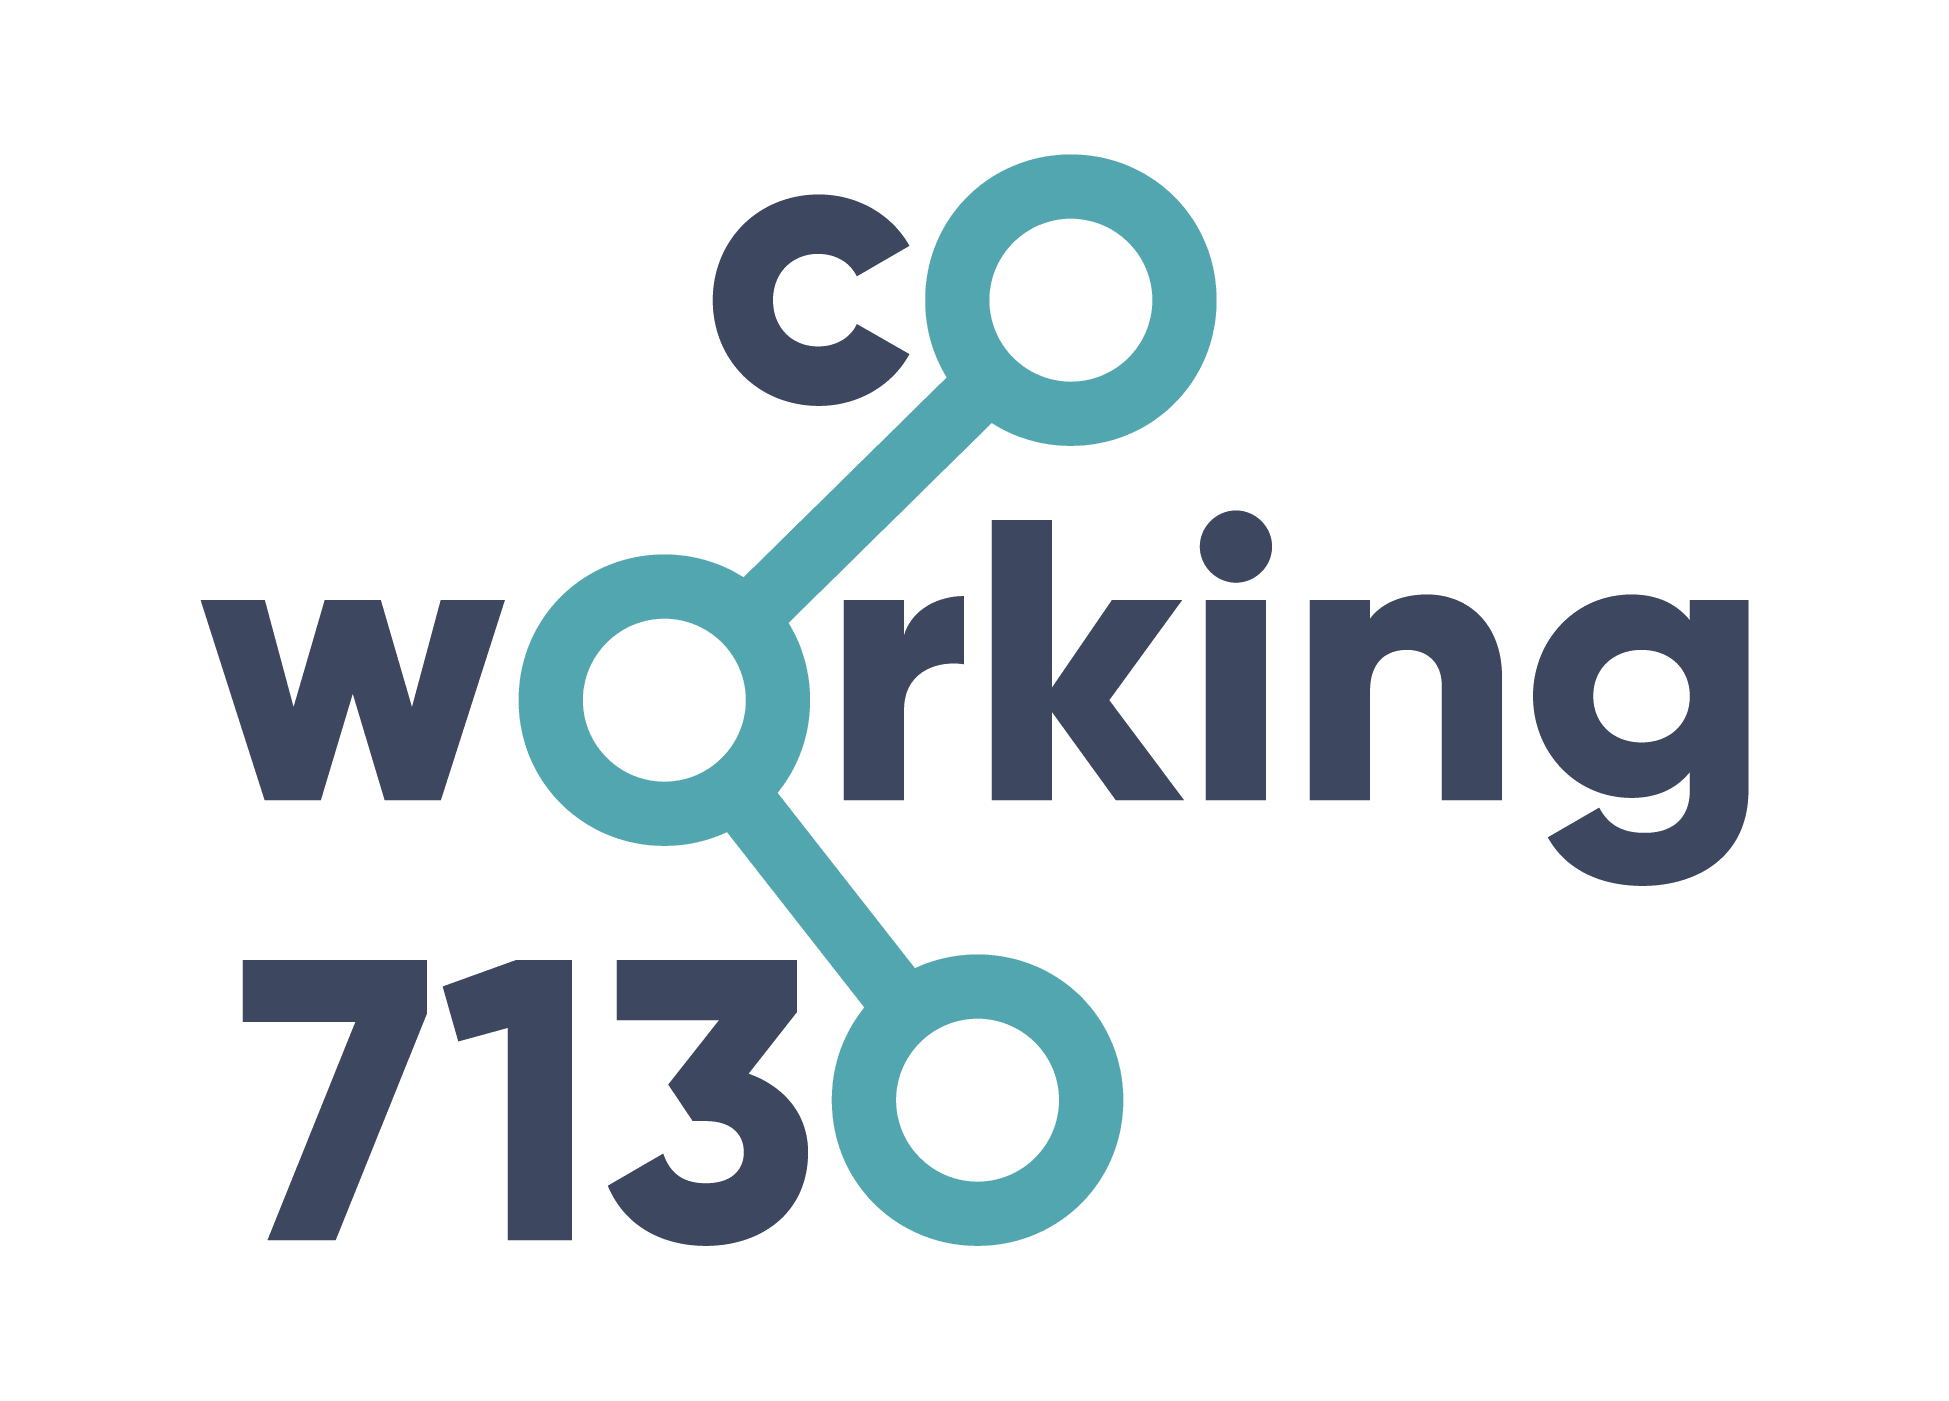 Coworking Community 7130 Ilanz/Glion